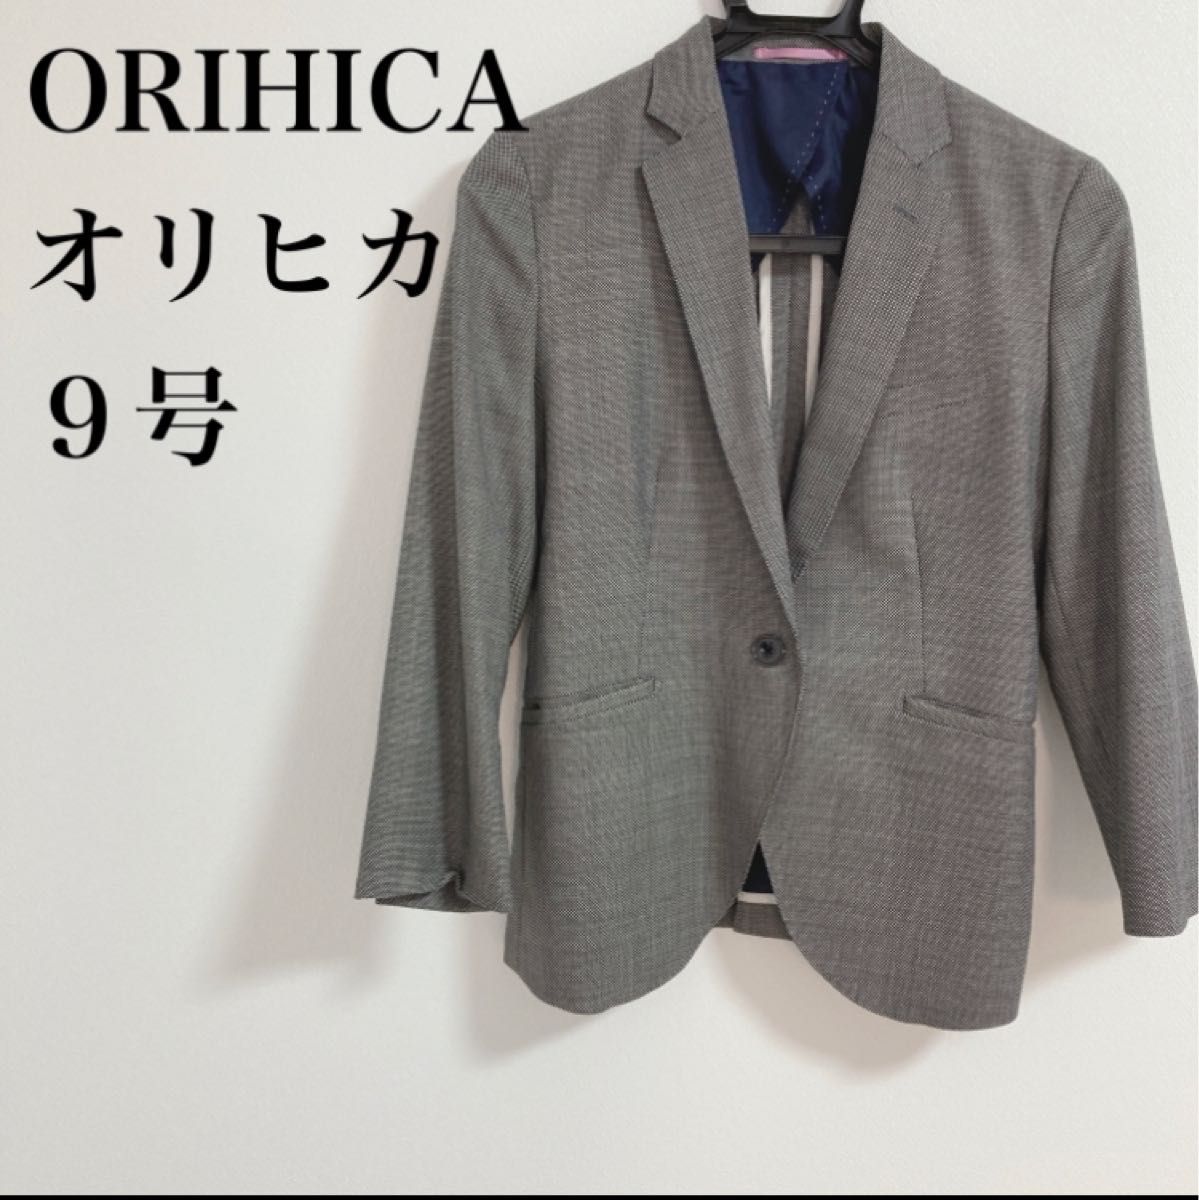 オリヒカ 夏 七分袖 ジャケット 9号 M スーツ ビジネス - ジャケット